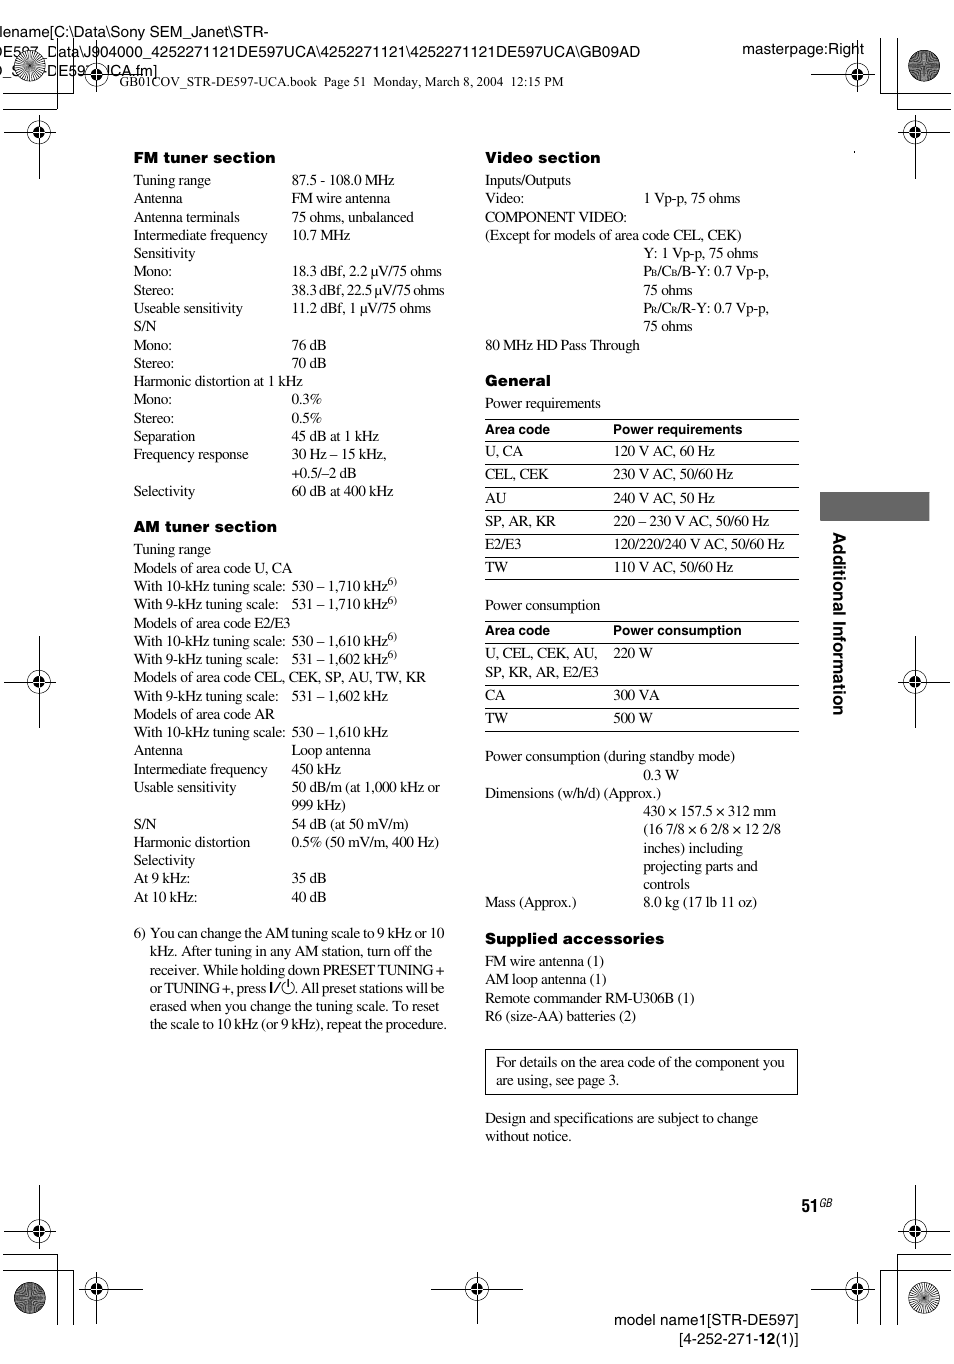 Sony STR-DE597 User Manual | Page 51 / 56